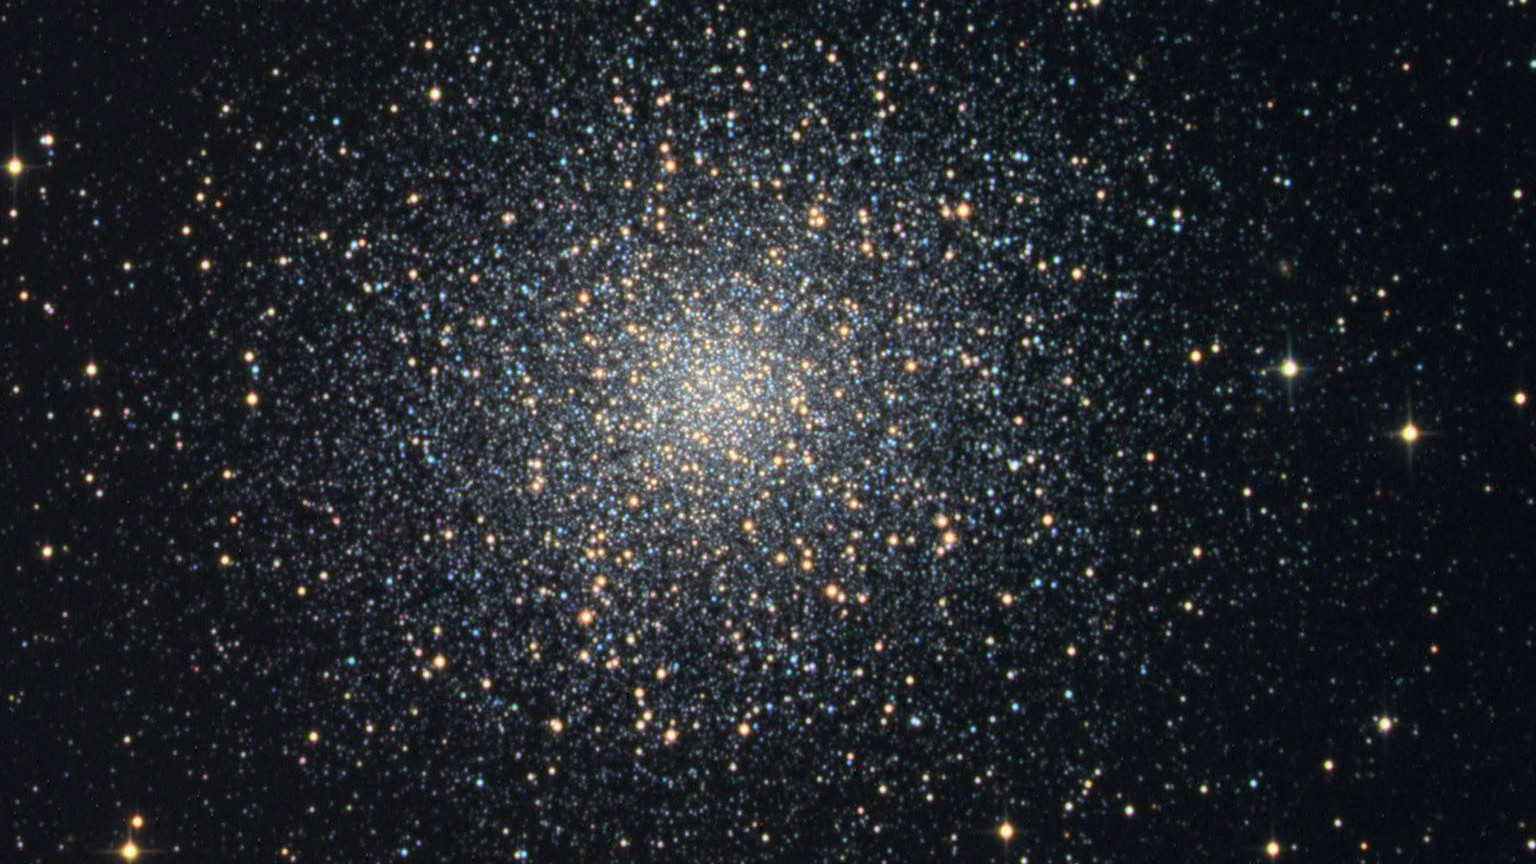 The Hercules Globular Cluster M13